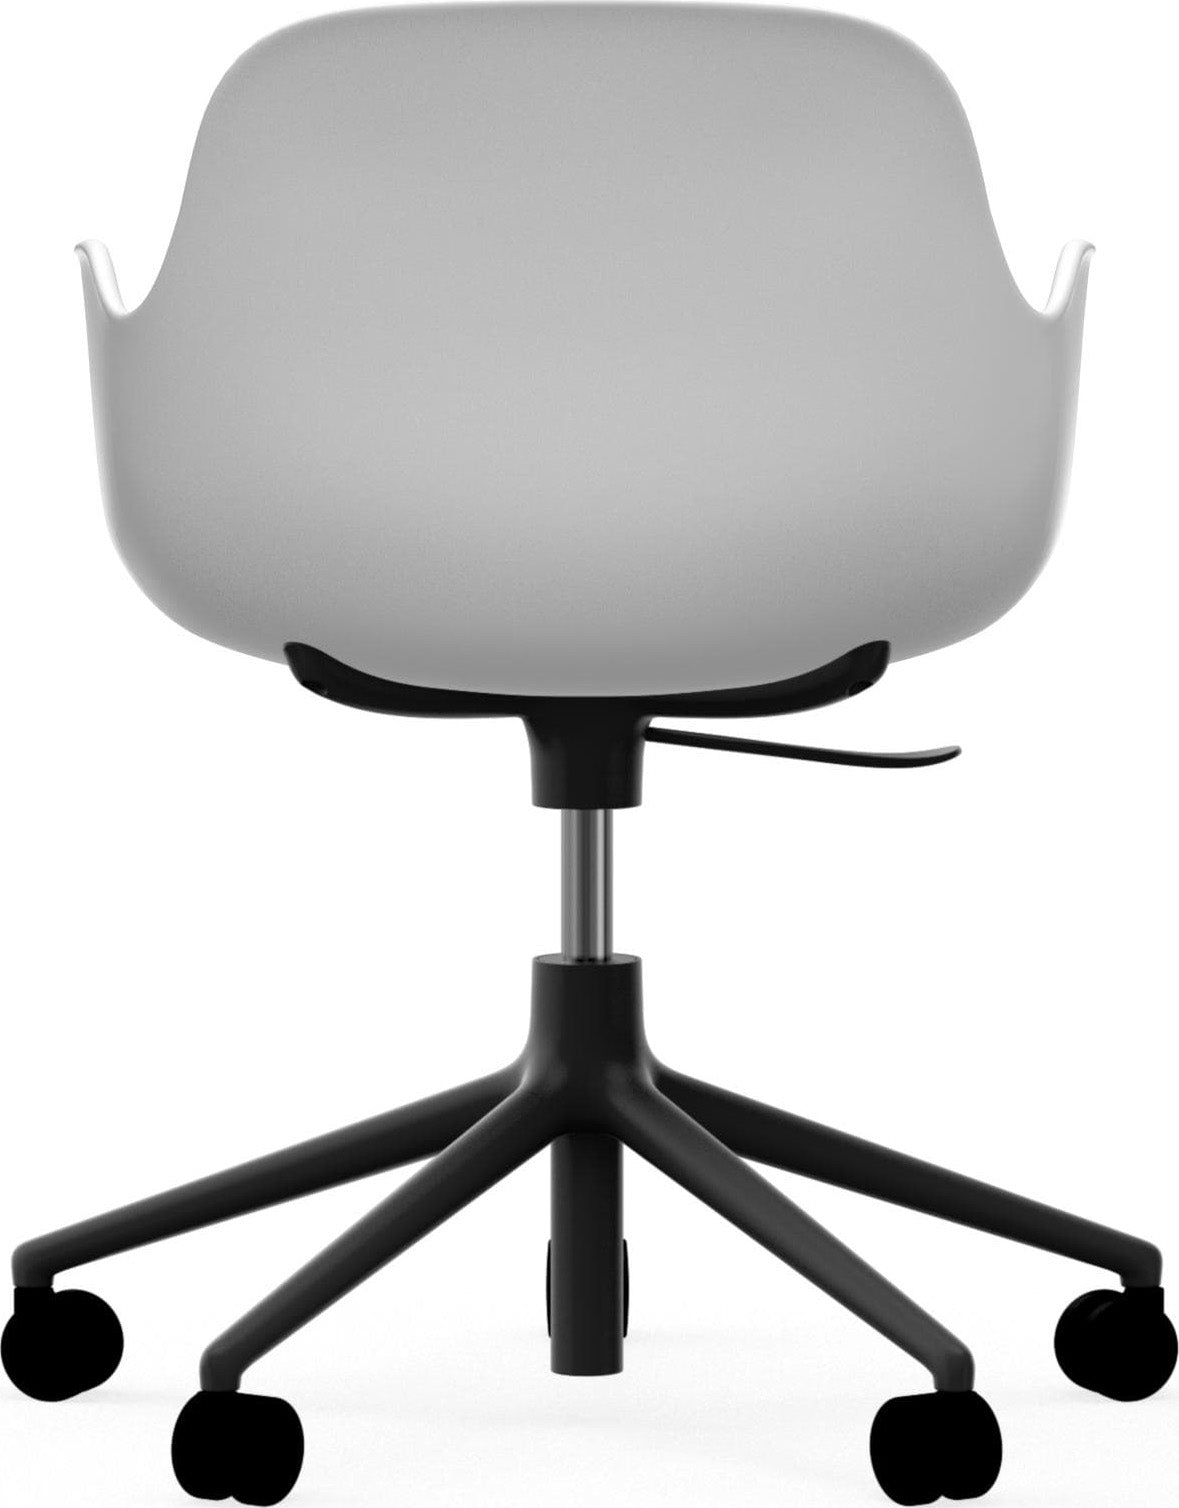 Form Bürostuhl mit Armlehne - KAQTU Design